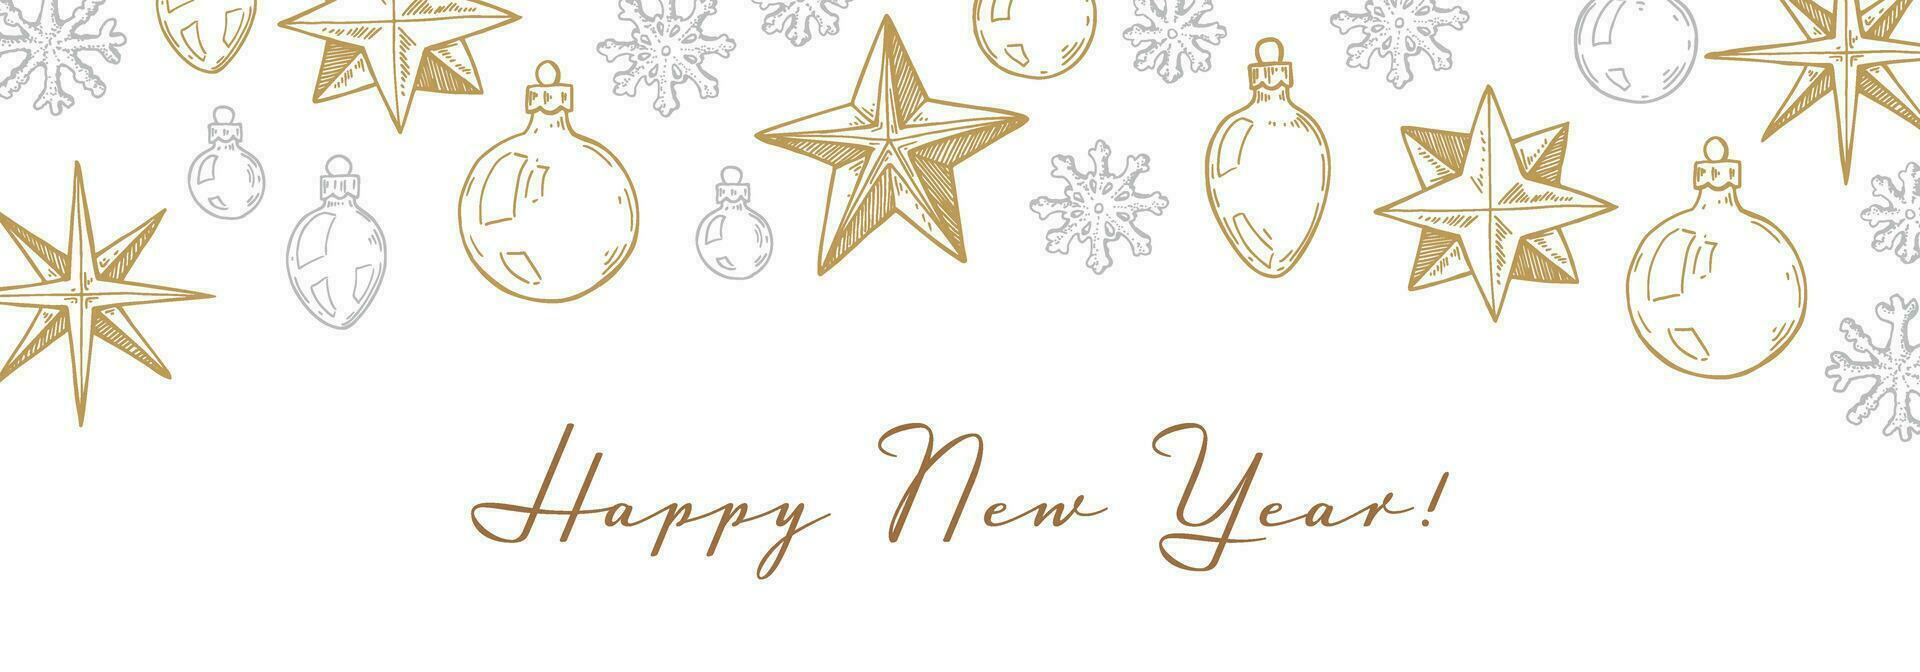 glad jul och Lycklig ny år horisontell hälsning kort med hand dragen gyllene stjärnor och snöflingor. vektor illustration i skiss stil. Semester festlig bakgrund